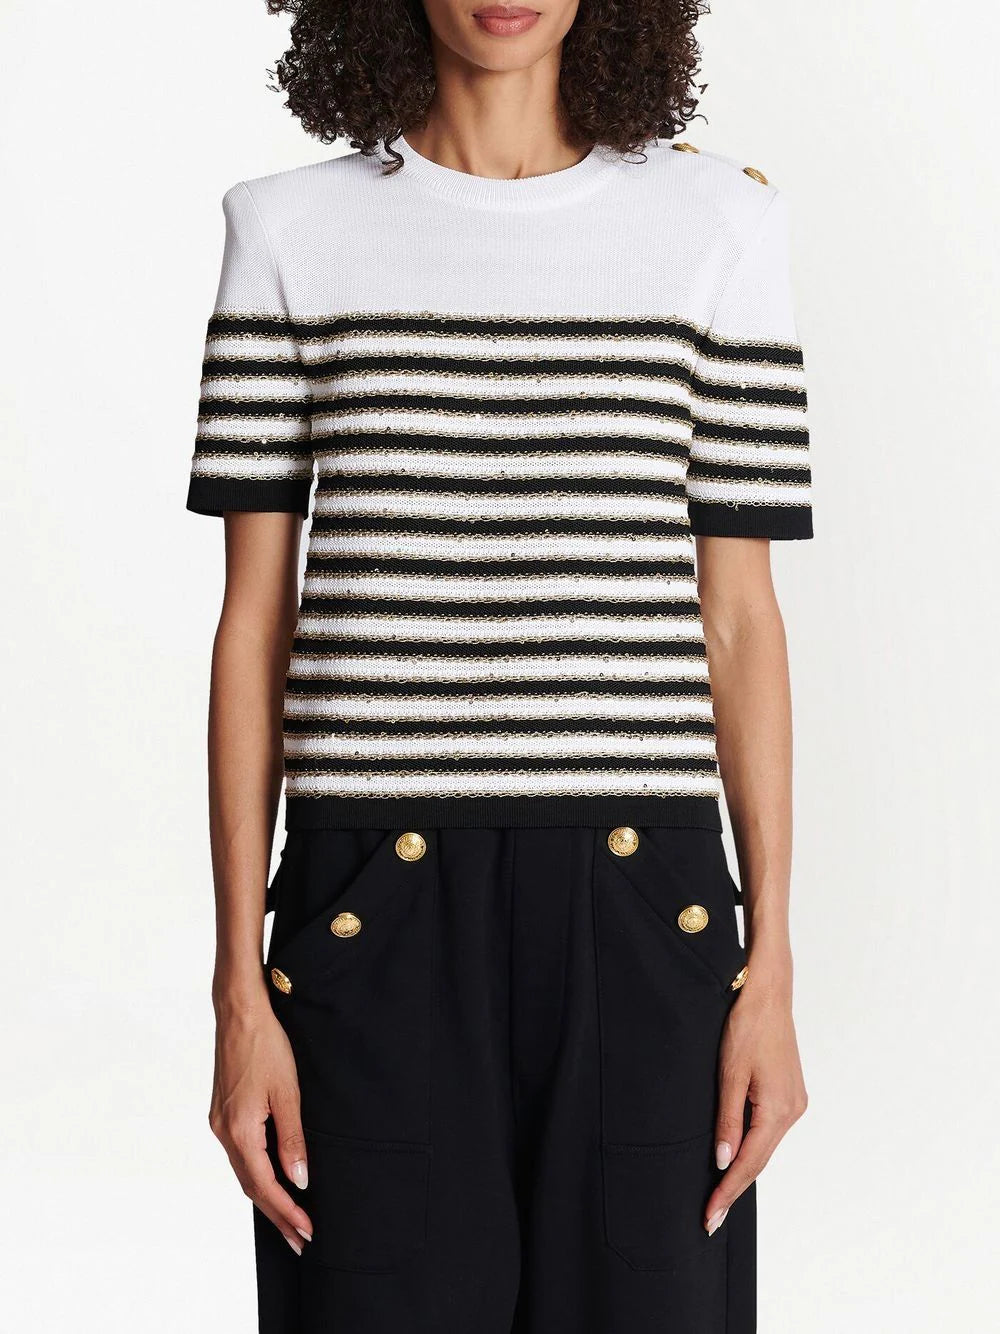 BALMAIN WOMEN 3BTN Striped Knit Top White/Black - MAISONDEFASHION.COM